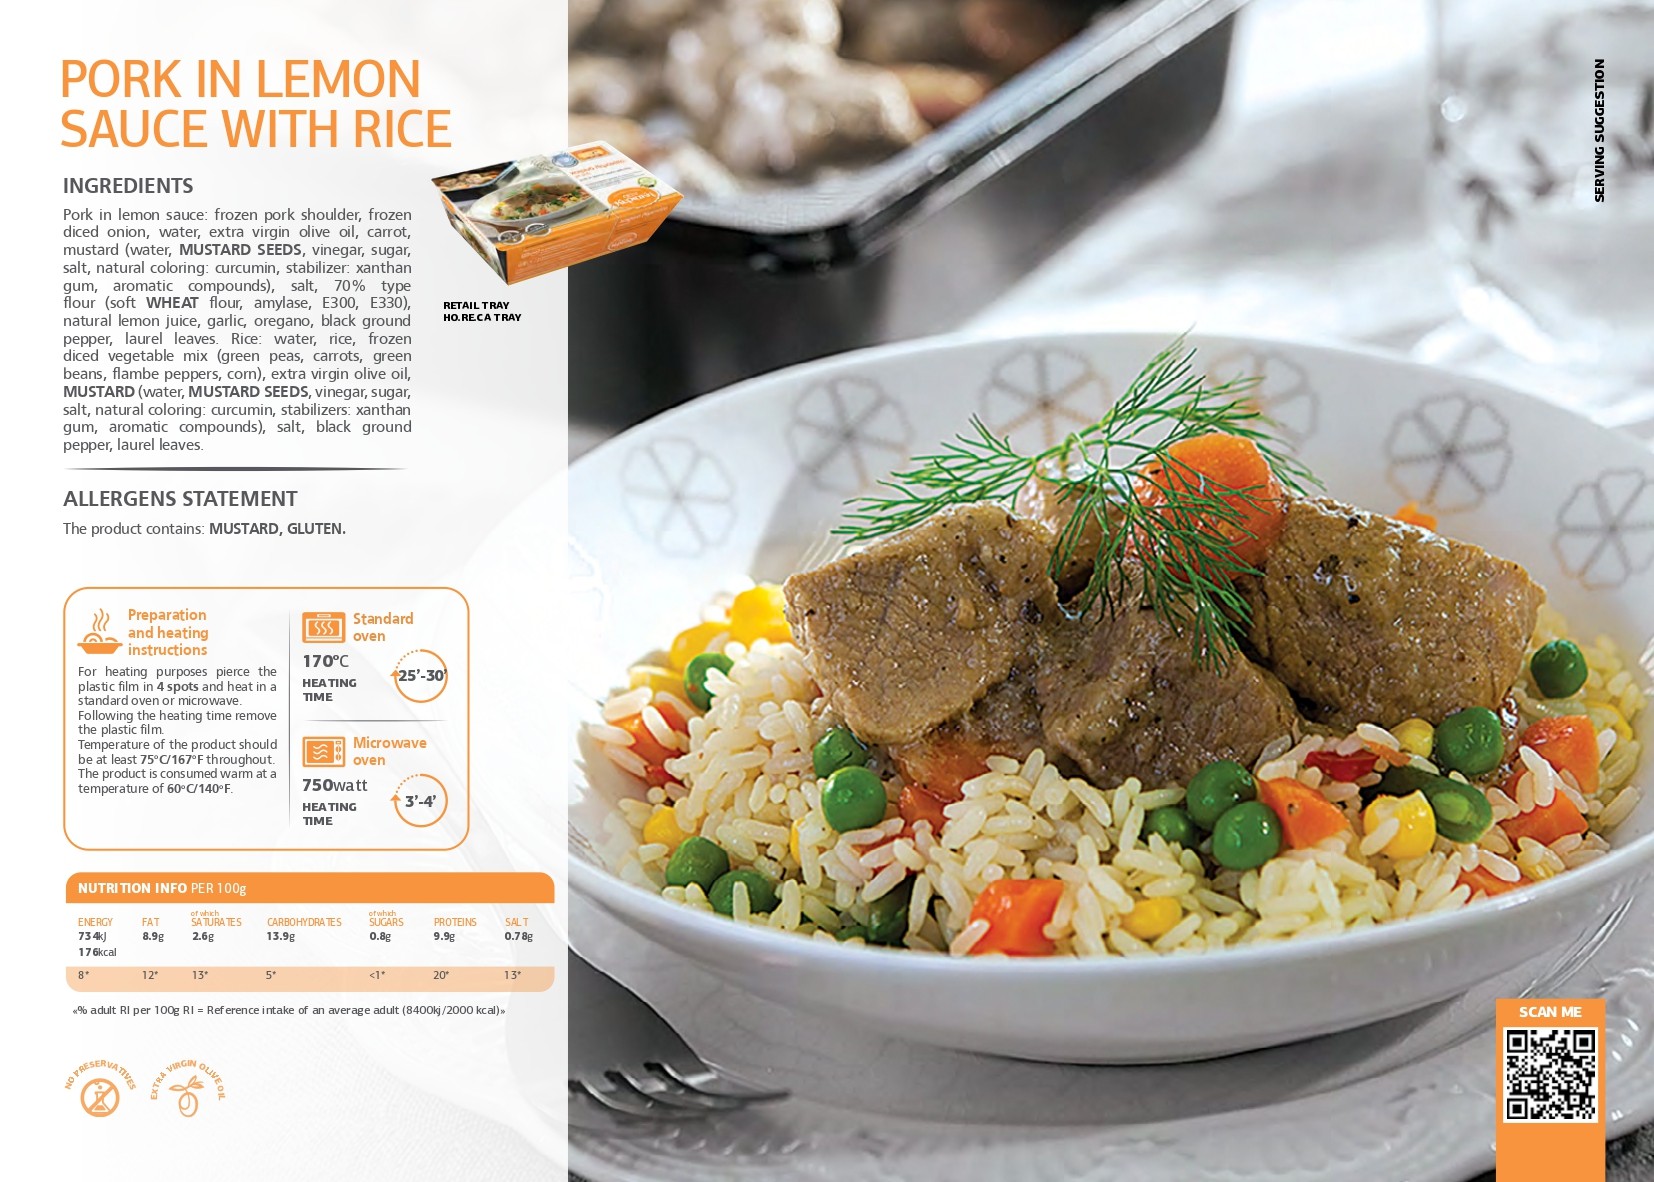 SK - Pork in lemon sauce with rice pdf image